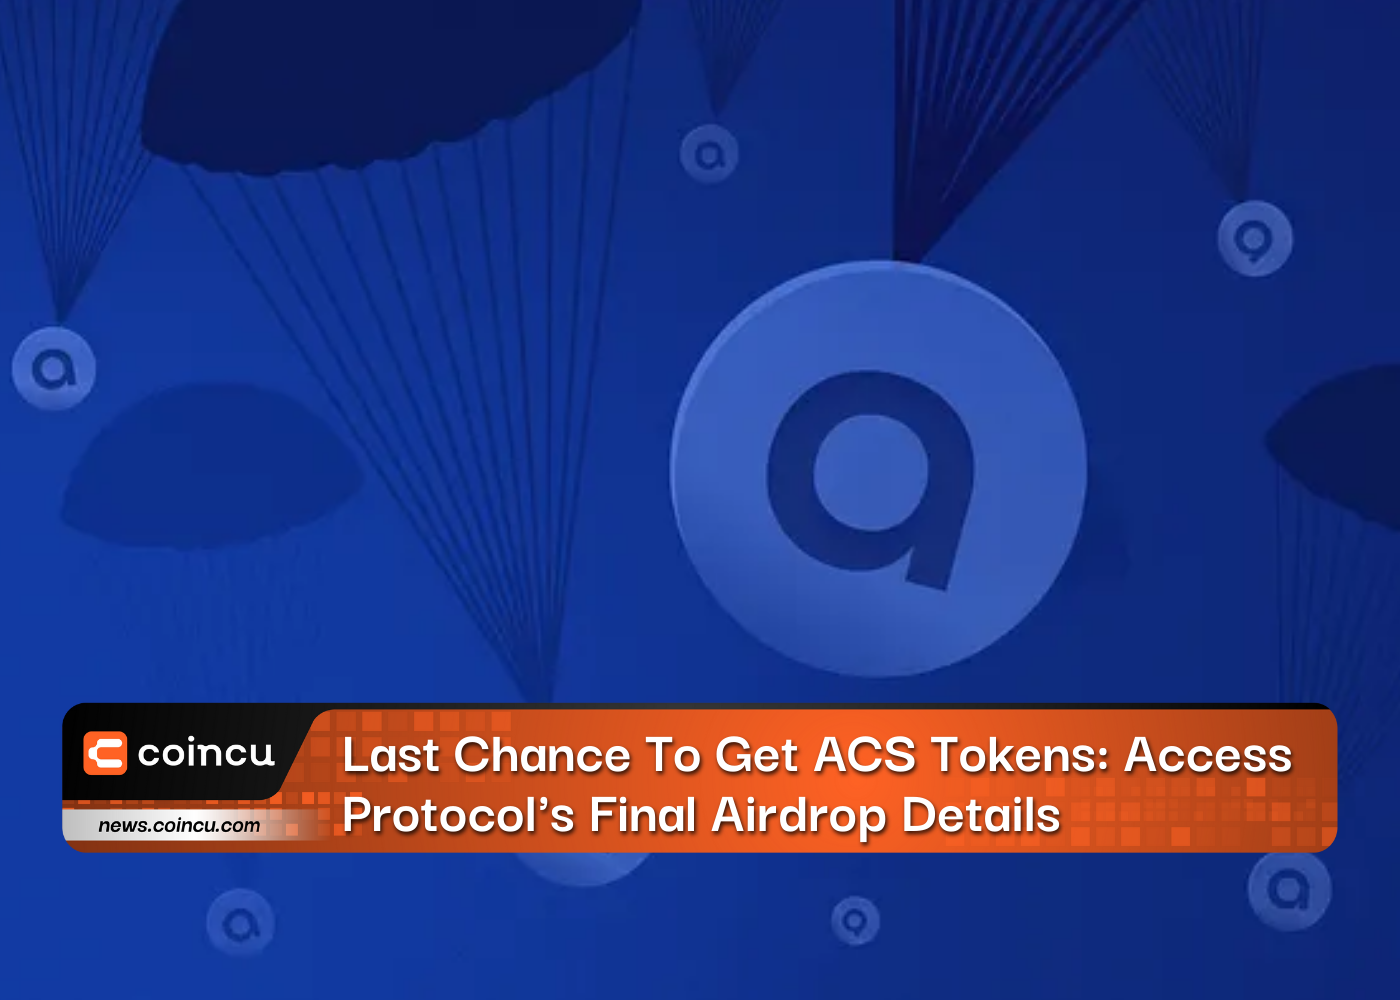 Última chance para obter tokens ACS: detalhes finais do lançamento aéreo do protocolo de acesso